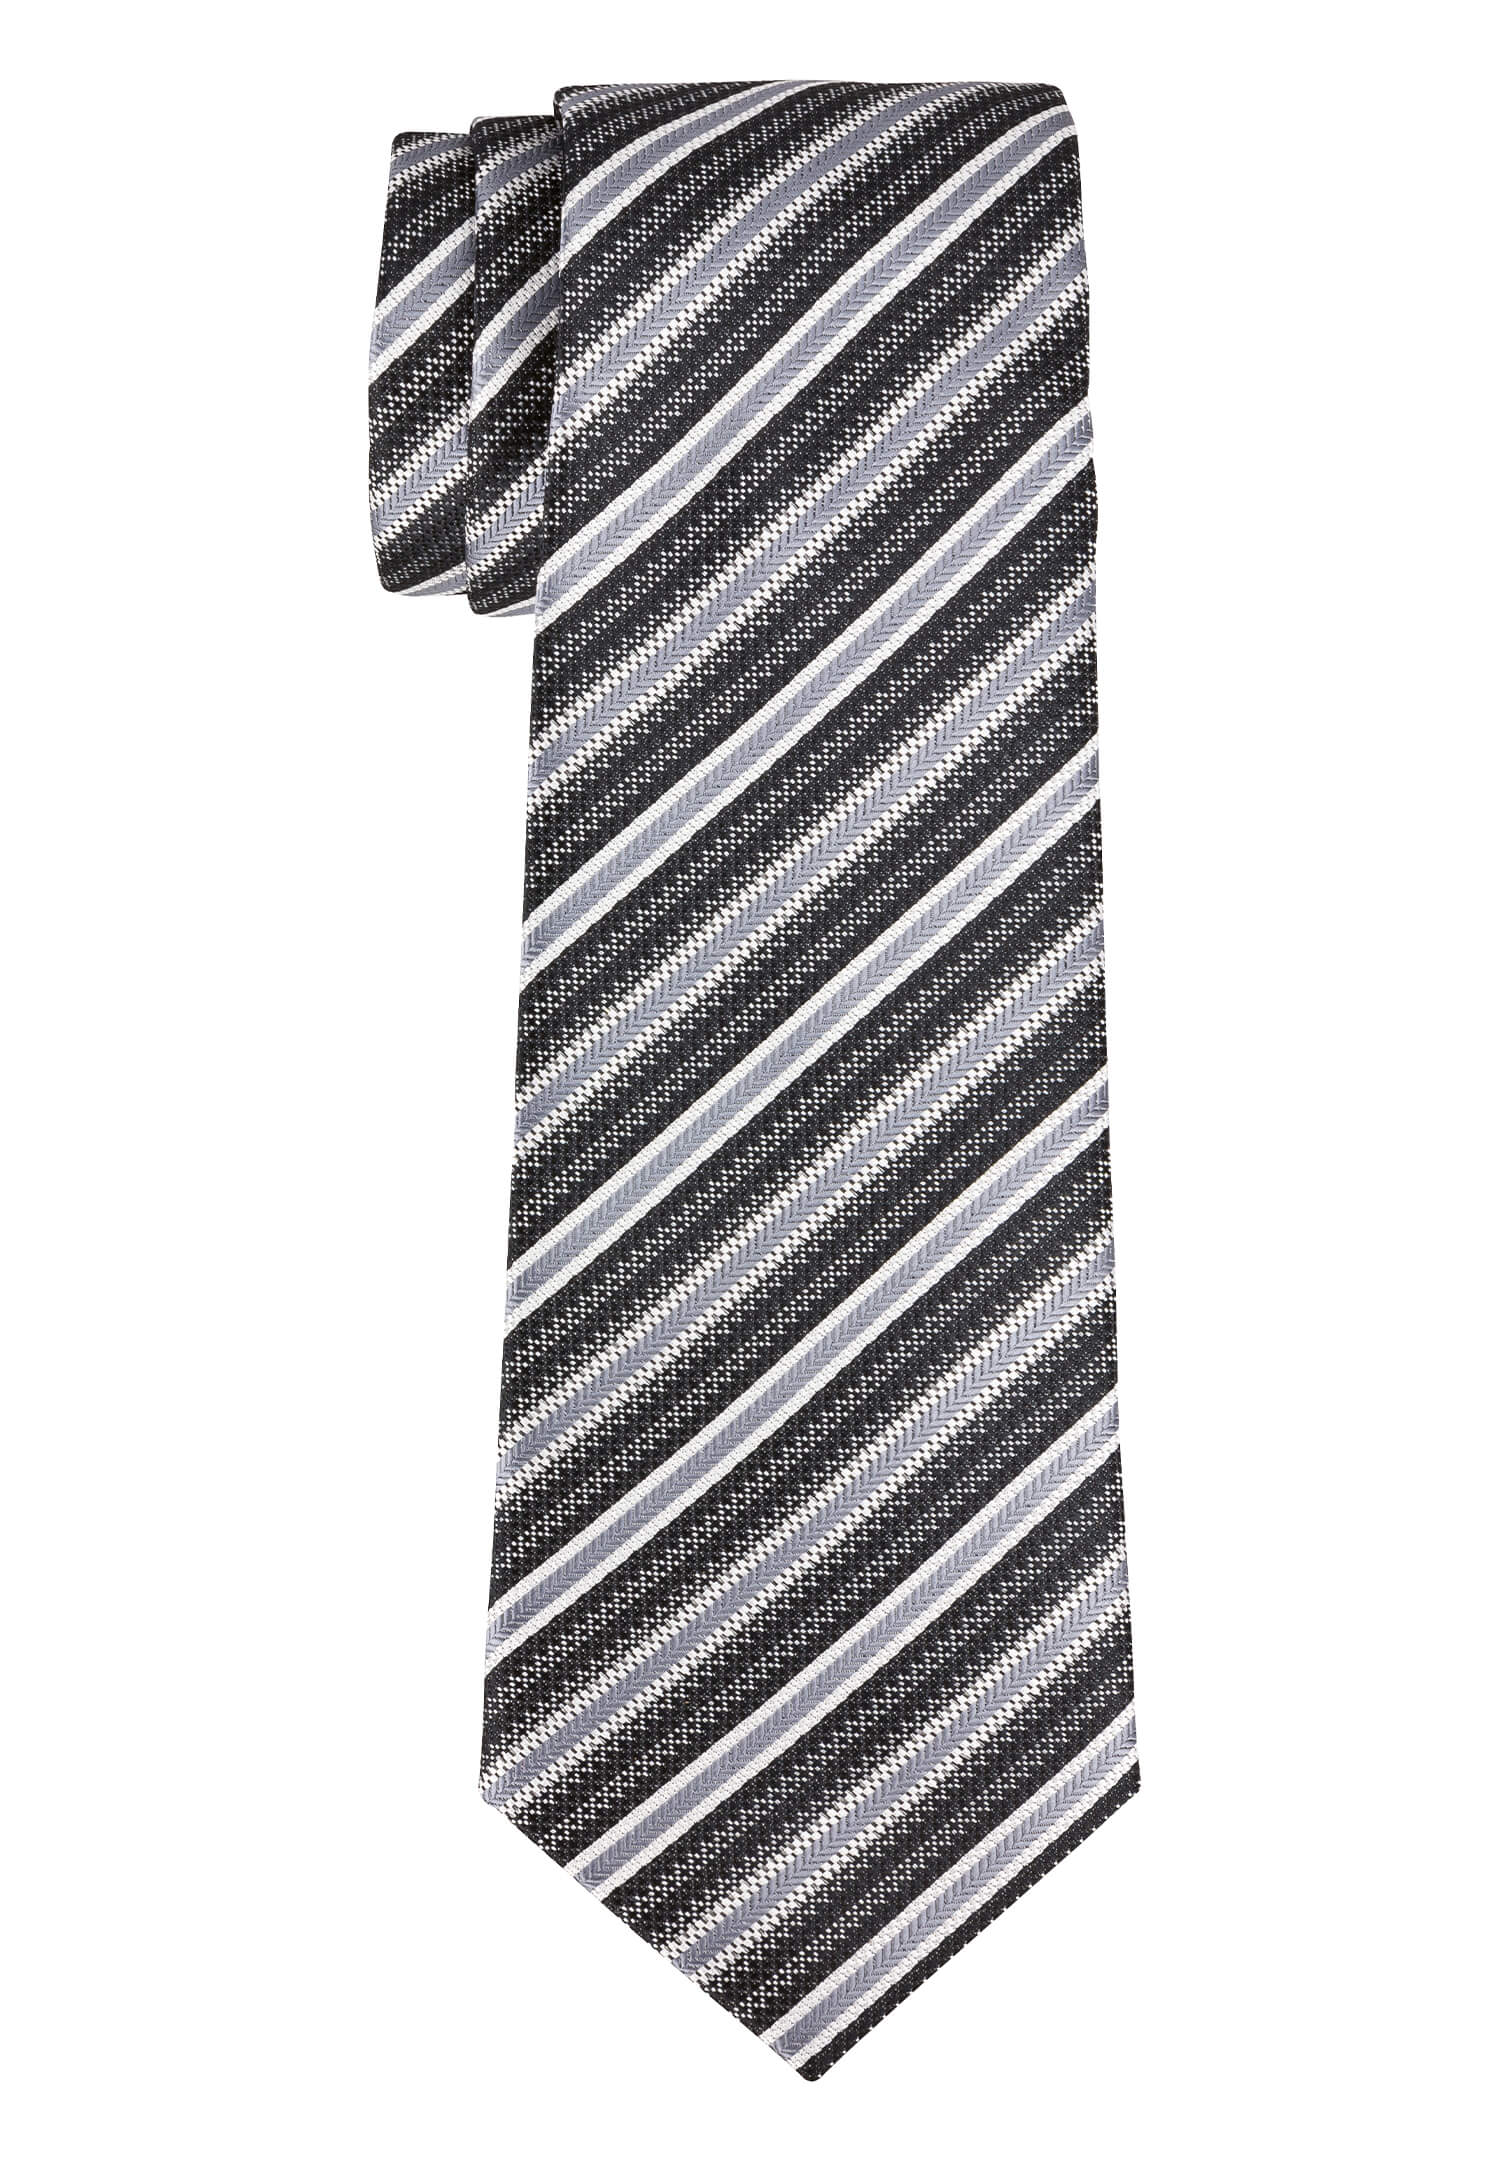 Krawatte modischer Streifen schwarz/grau/anthrazit